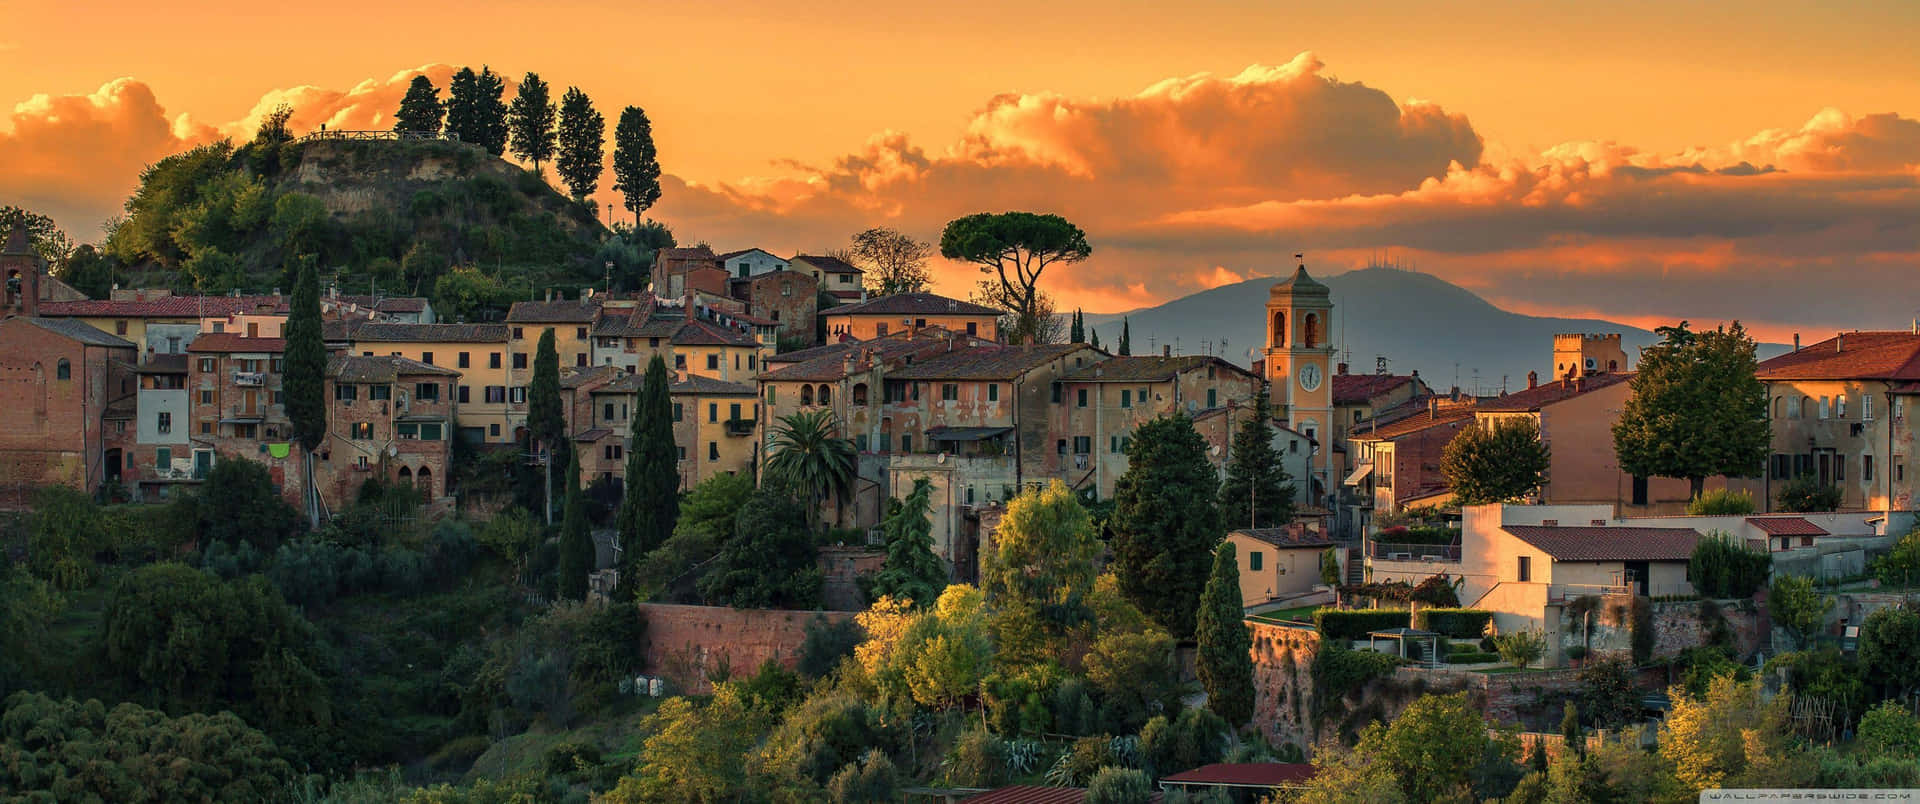 Einestadt Ist Bei Sonnenuntergang In Italien Zu Sehen. Wallpaper